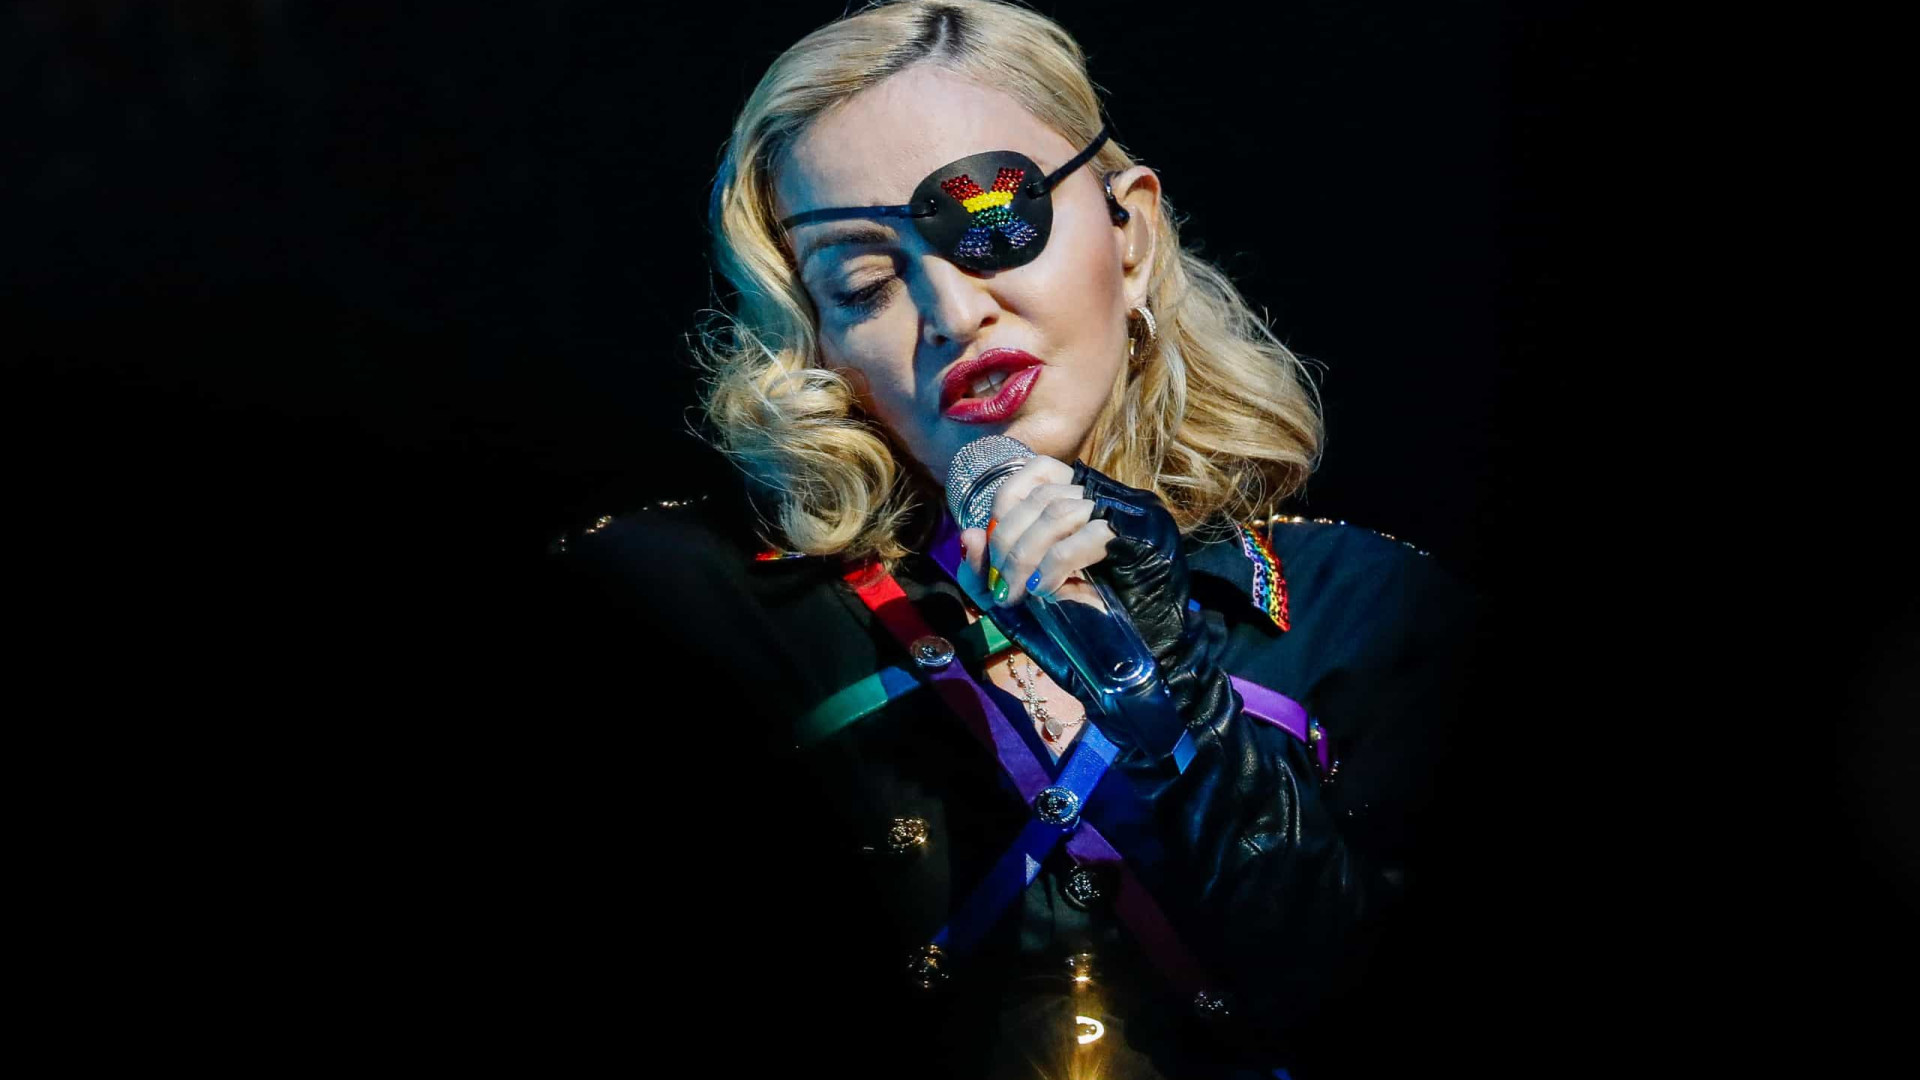 Madonna comenta caso da morte de homem negro desarmado: "doloroso"